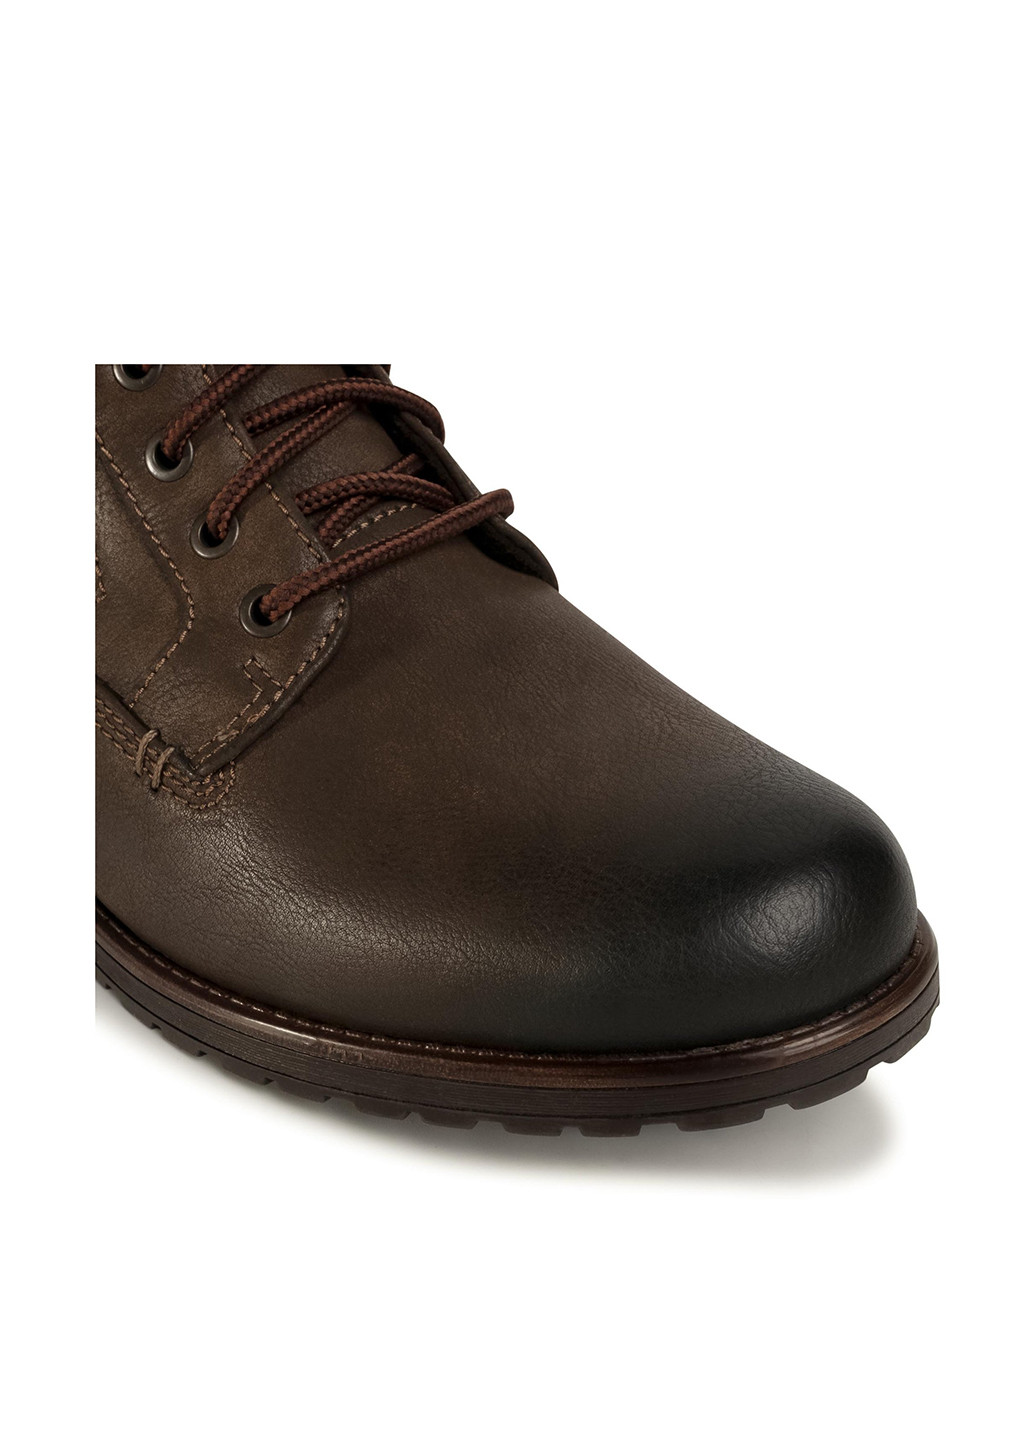 Темно-коричневые осенние черевики mbs-goran-108 Lanetti